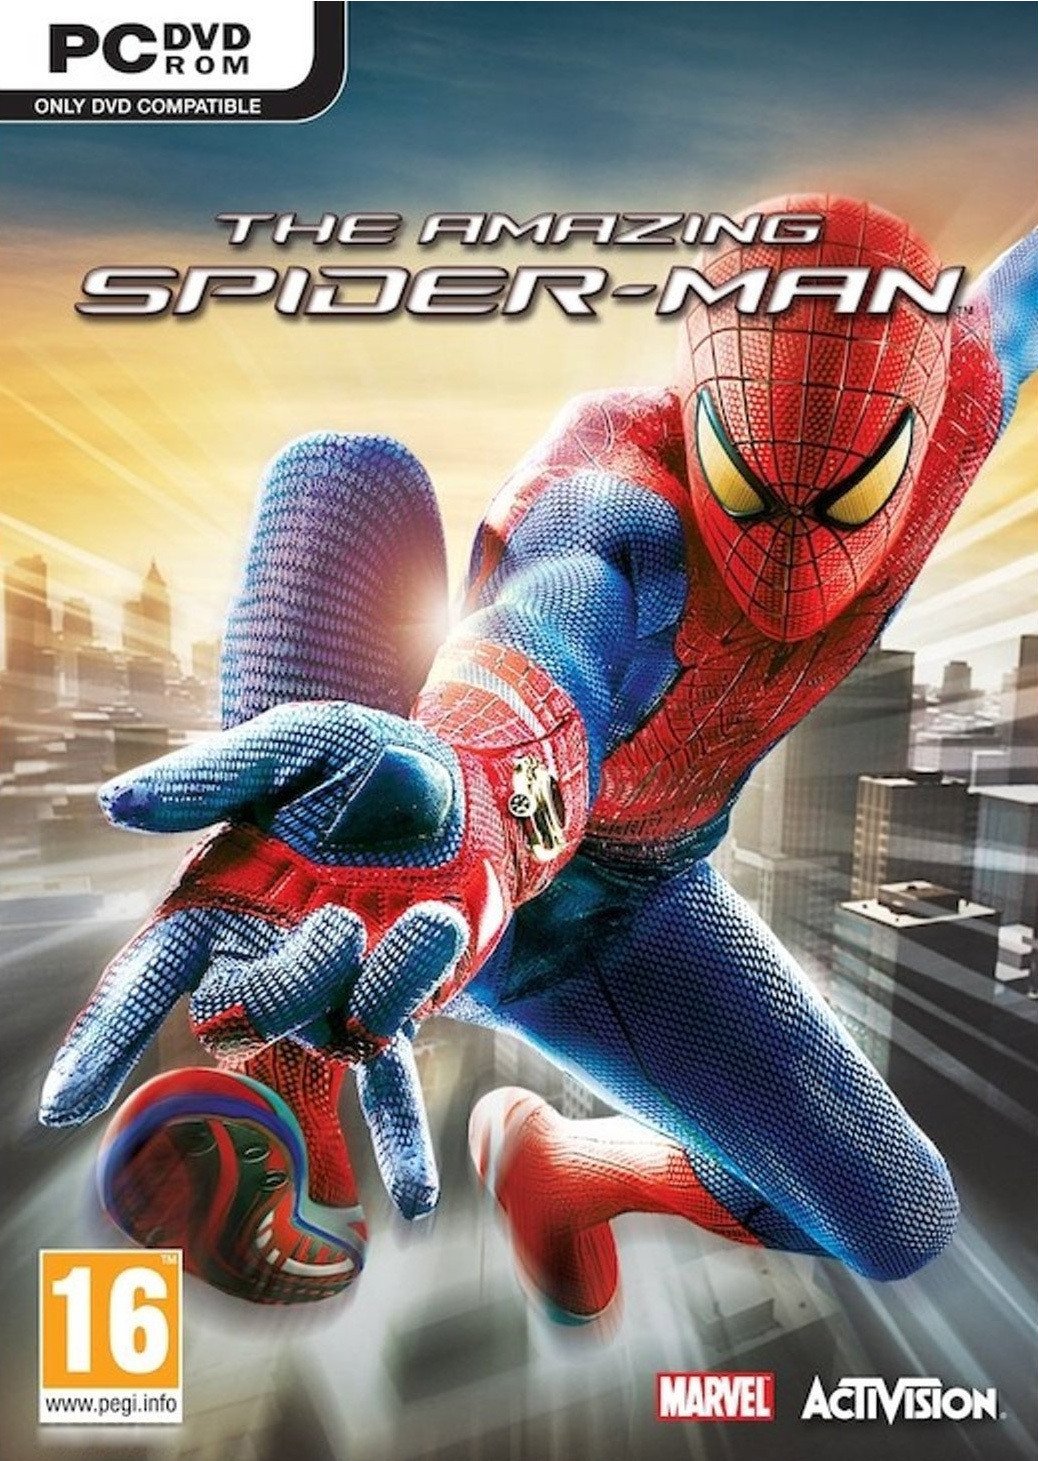  لعبة الأكشن والأثارة الشهيرة The Amazing Spider-Man Jaquette-the-amazing-spider-man-pc-cover-avant-g-1353338861